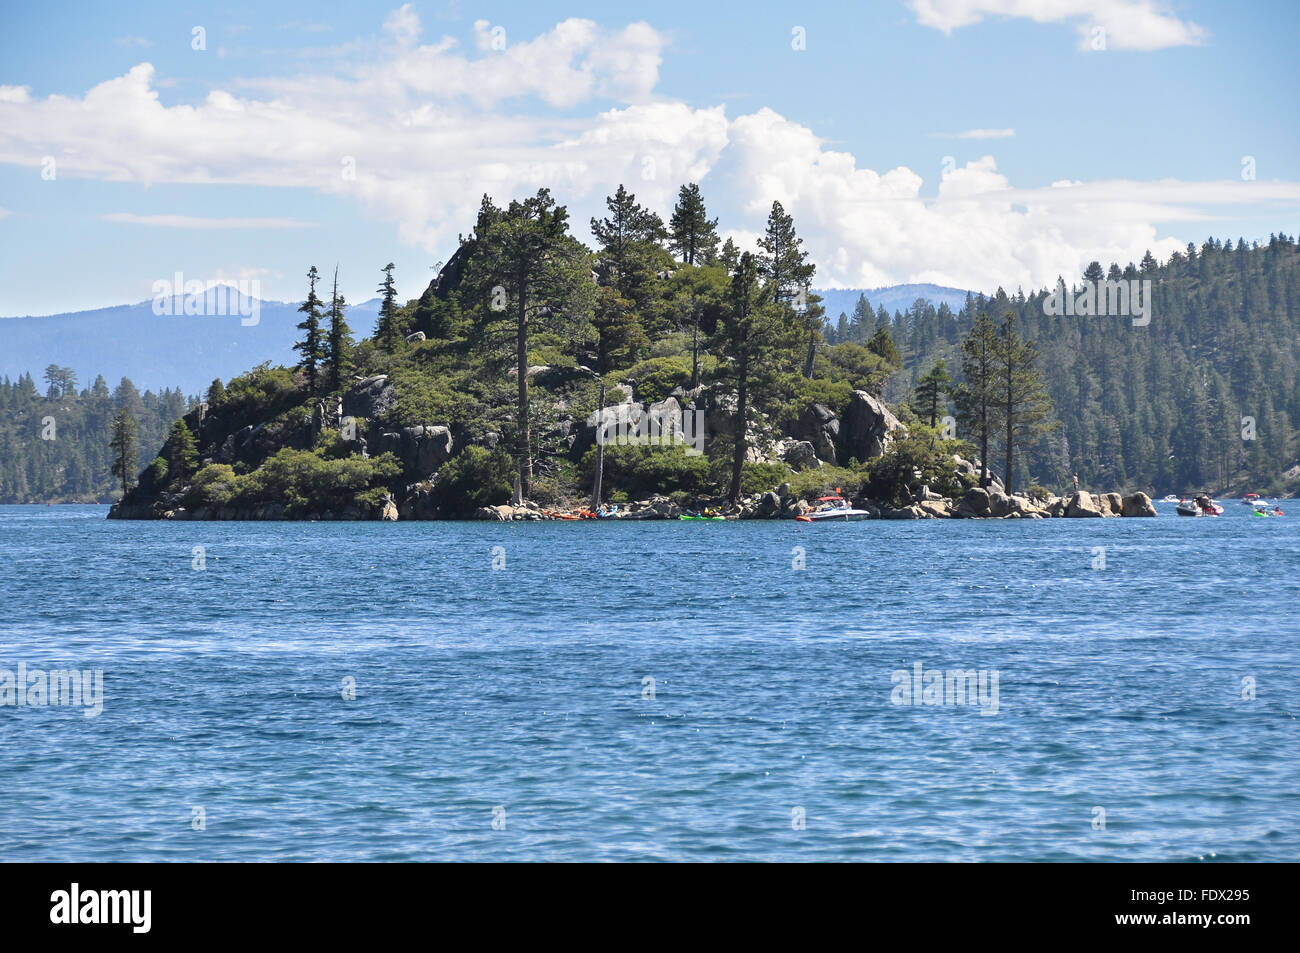 Fannette Island in Tahoe Lake, California Stock Photo